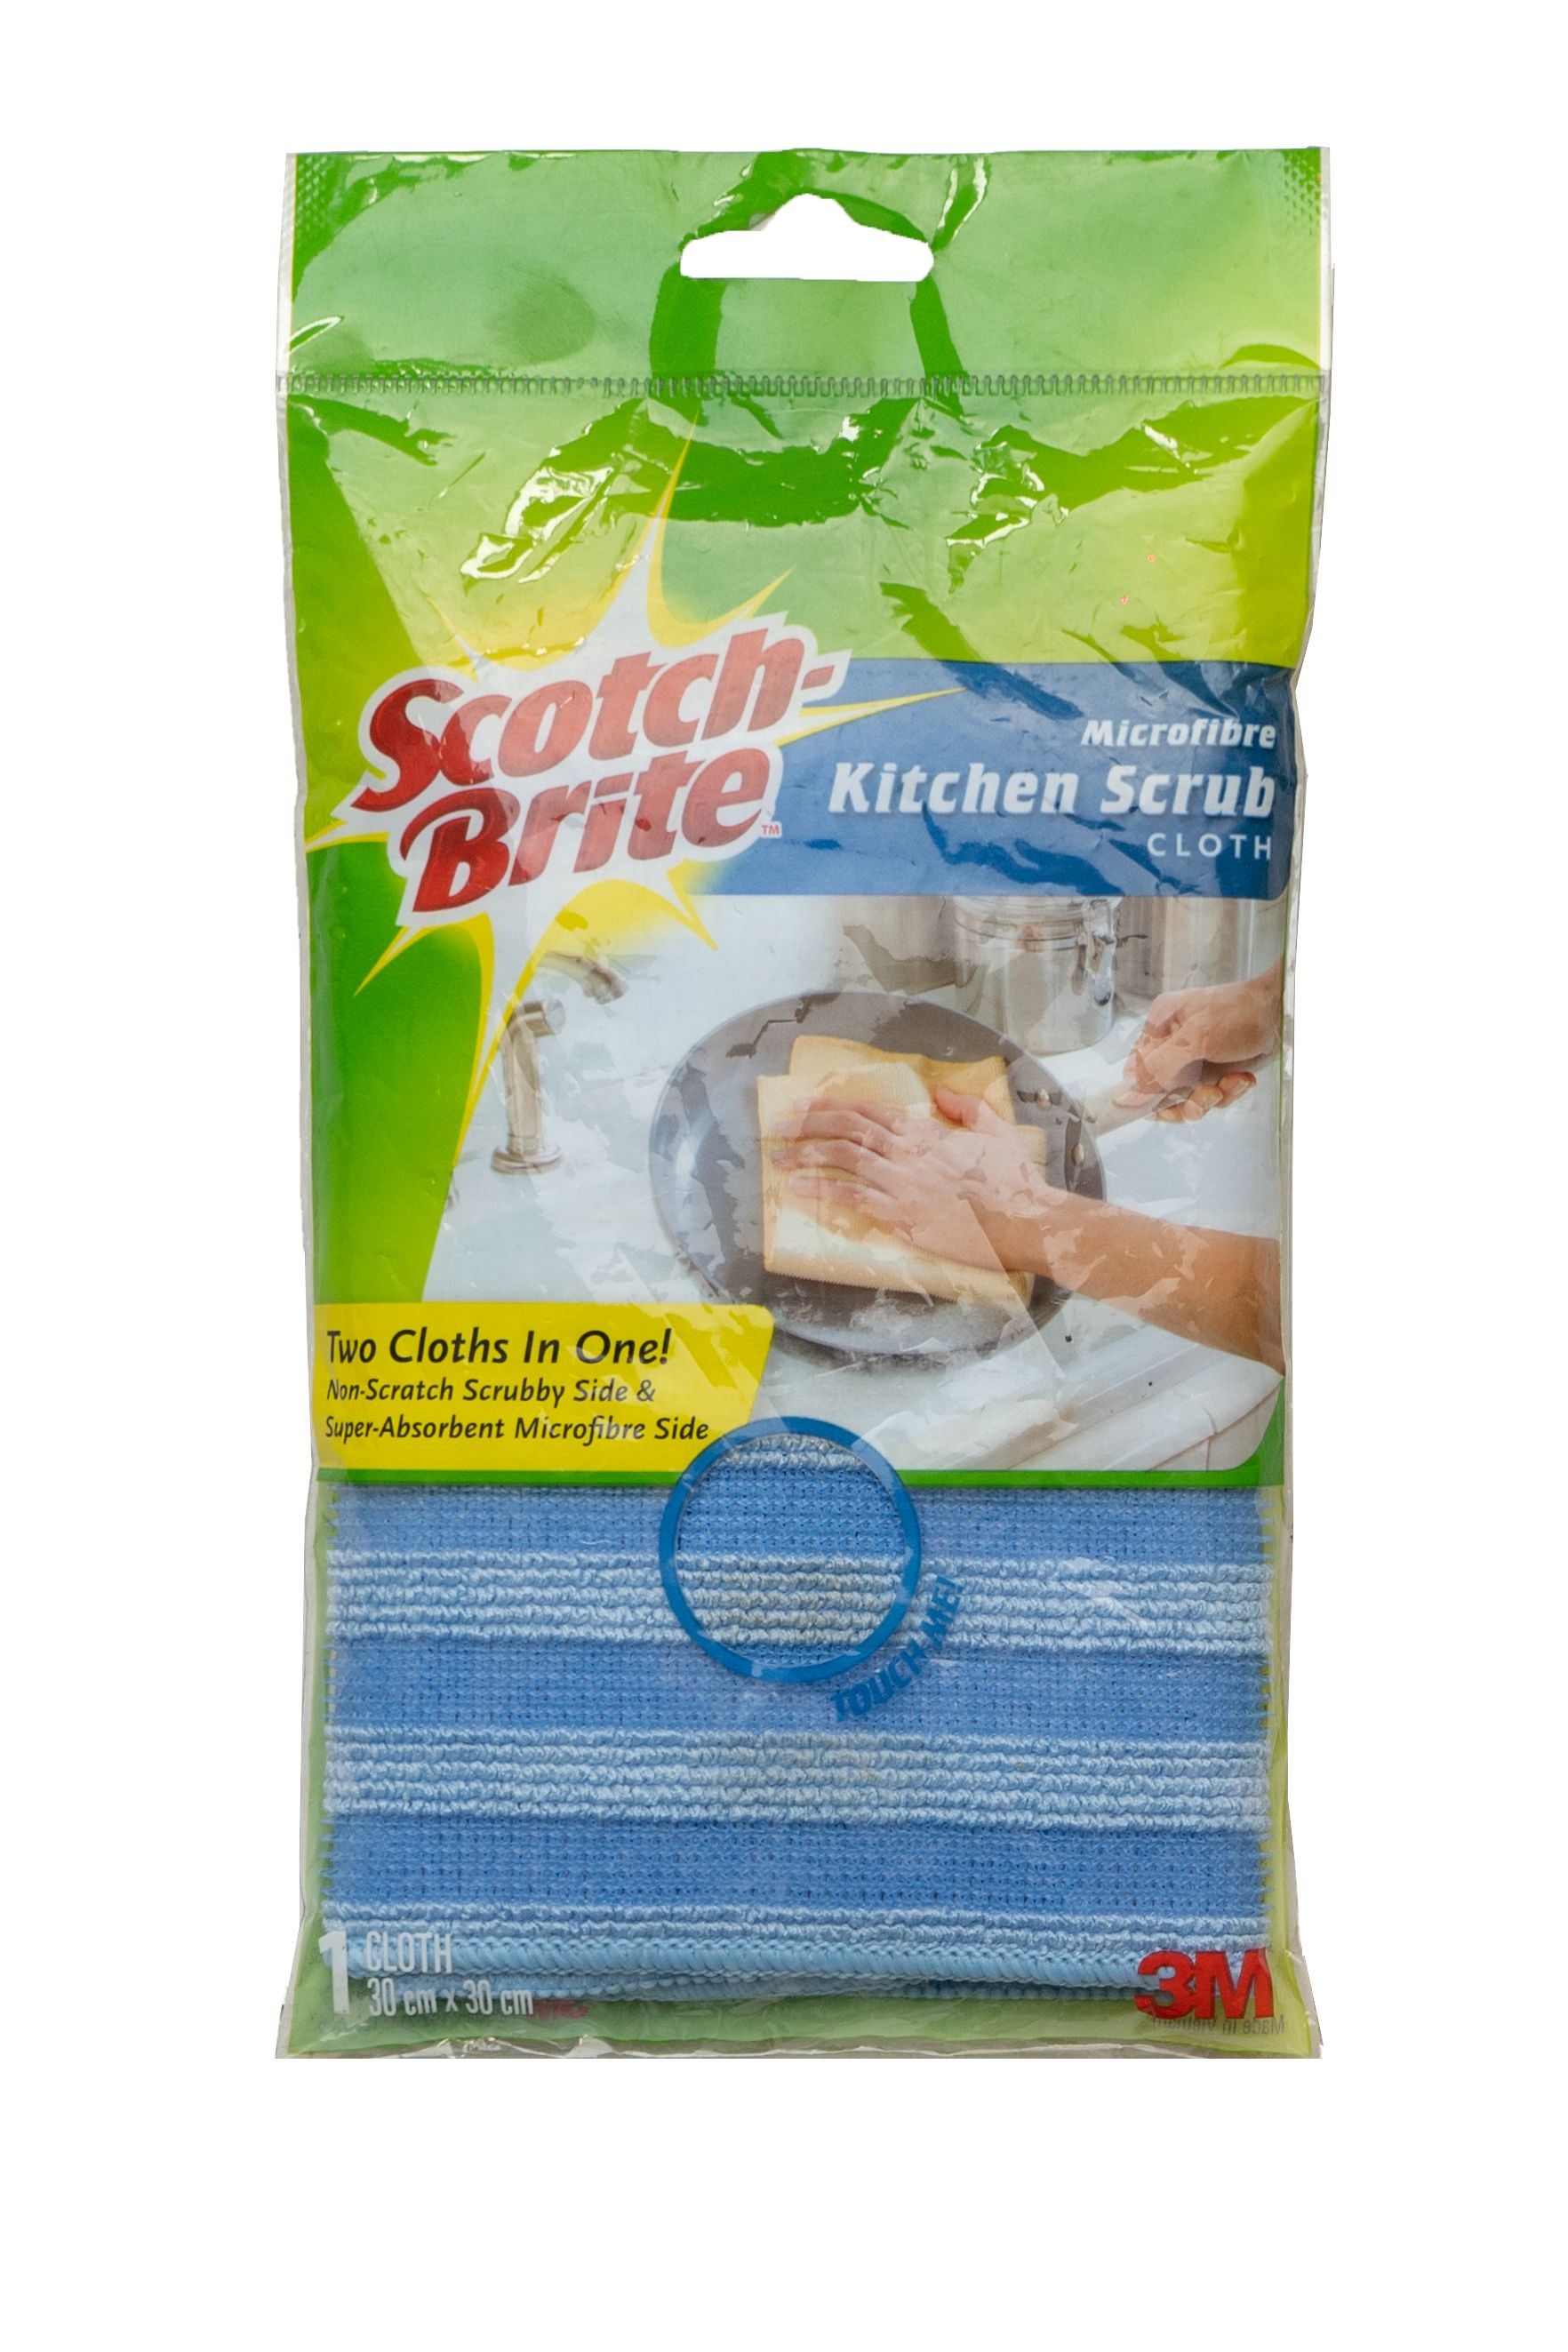 2936.Scotch Brite Microfiber .Kitchen Scrub Cloth 12 Packs ?t=1584563084